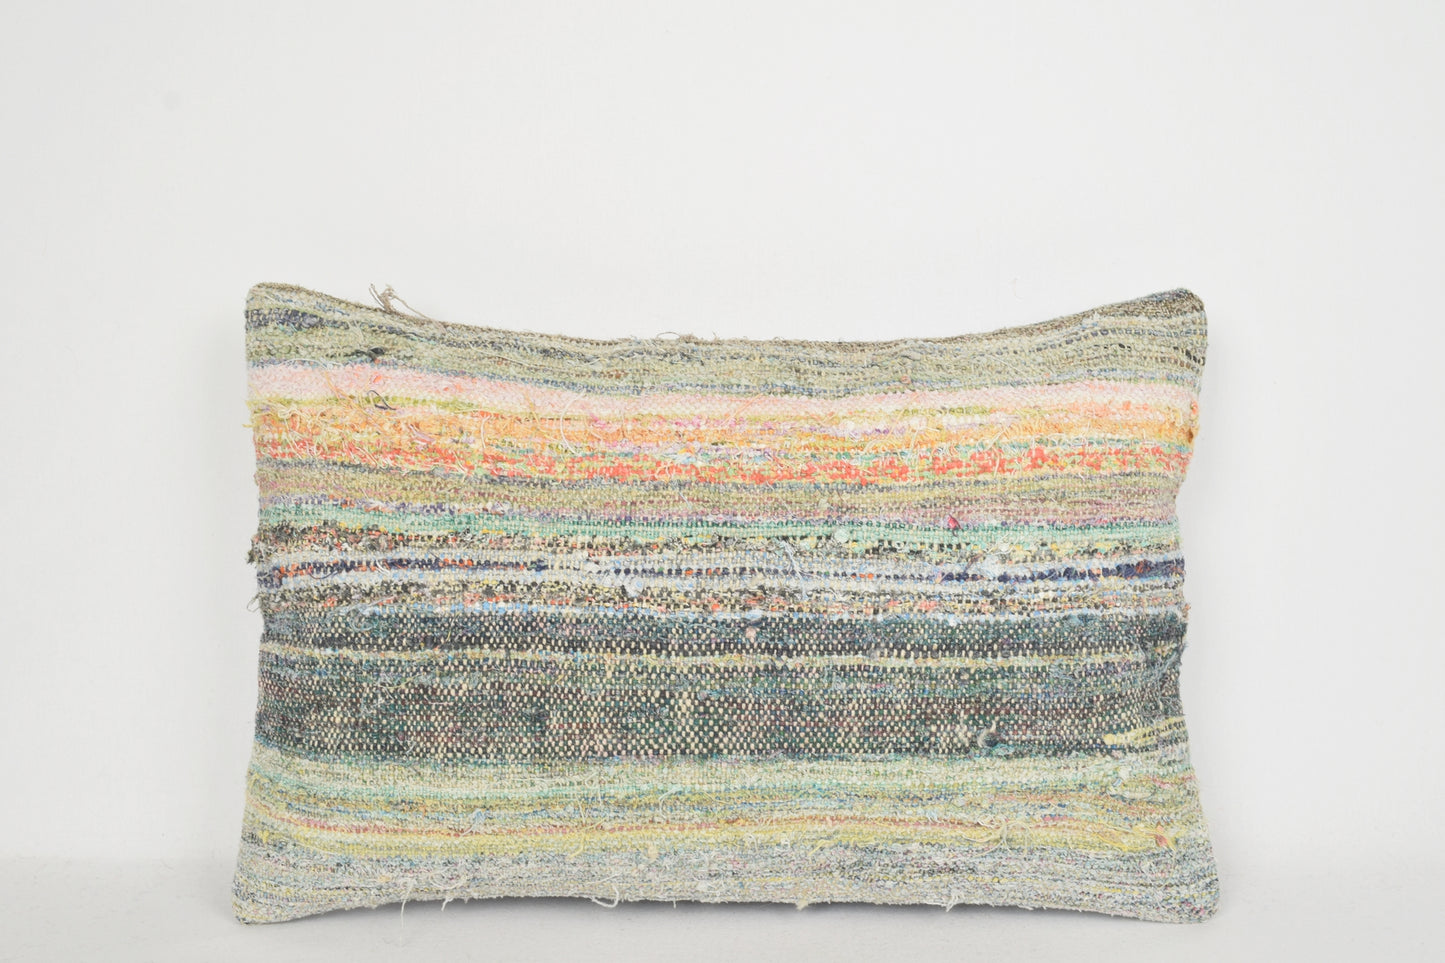 Rectangular Kilim Cushion E00237 Lumbar Needlework Mediterranean